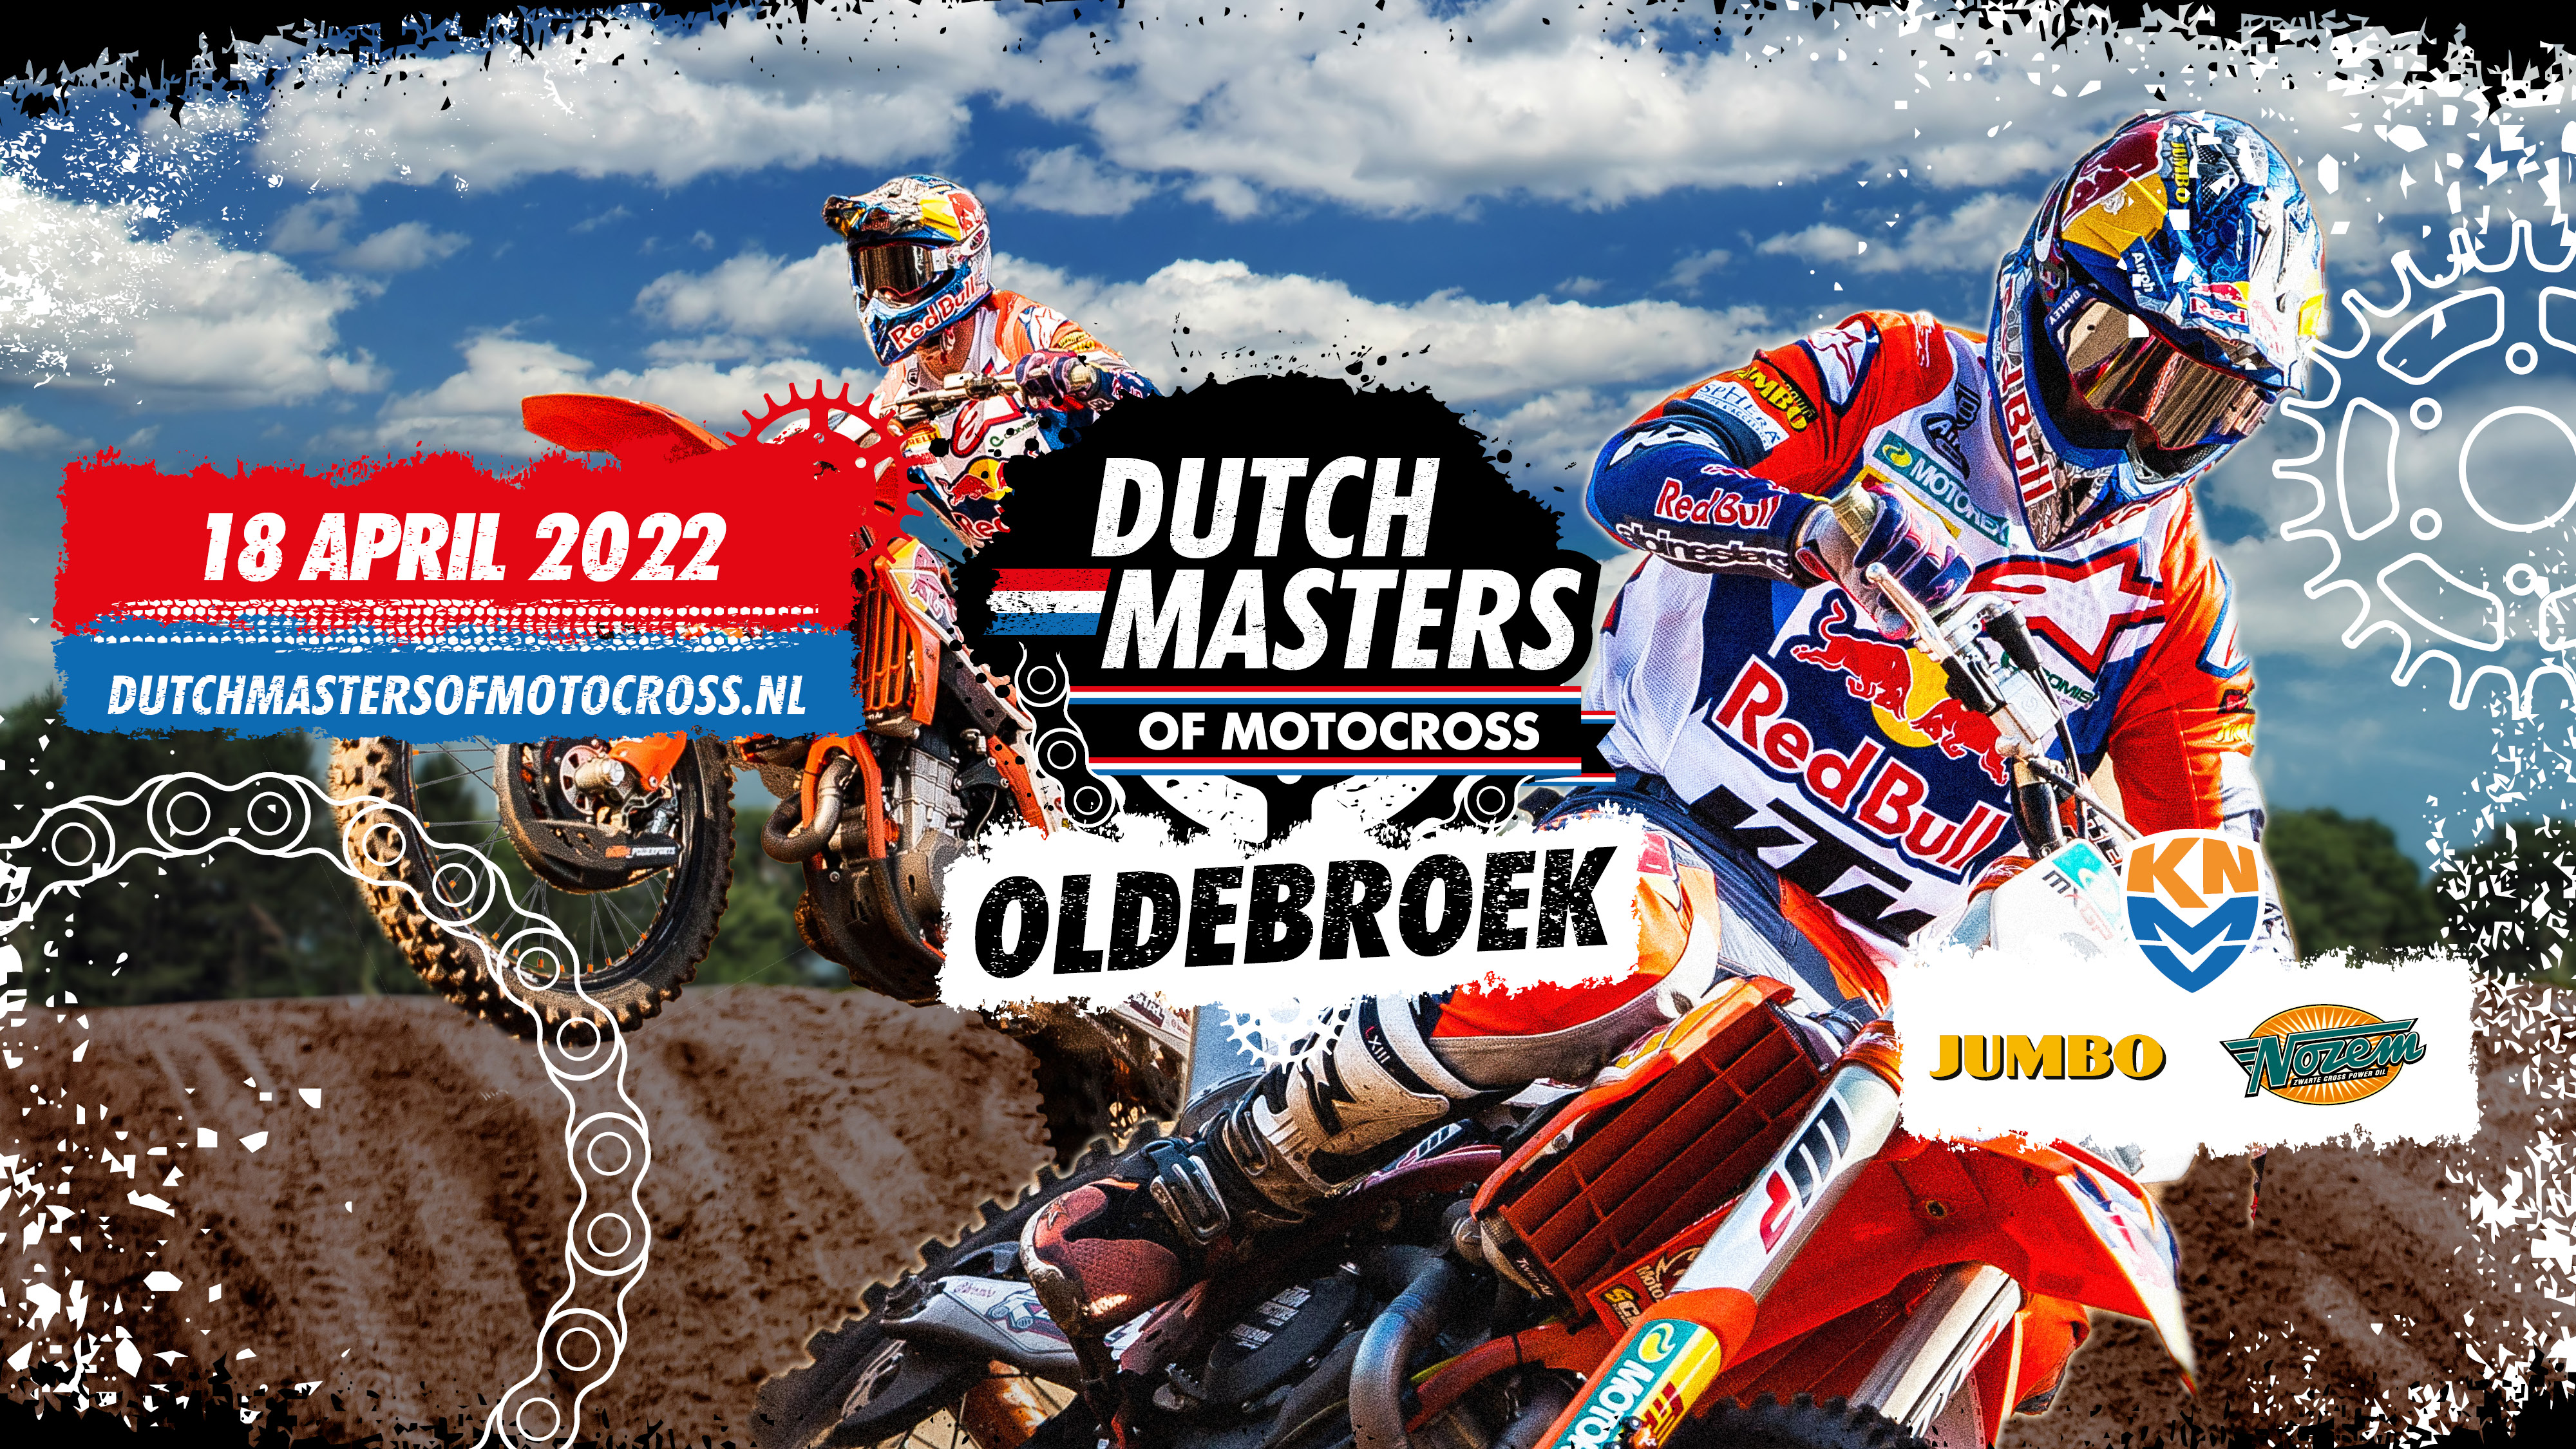 Dutch Masters Of Motocross '22 - Facebook Visual 1920x1080px Oldebroek